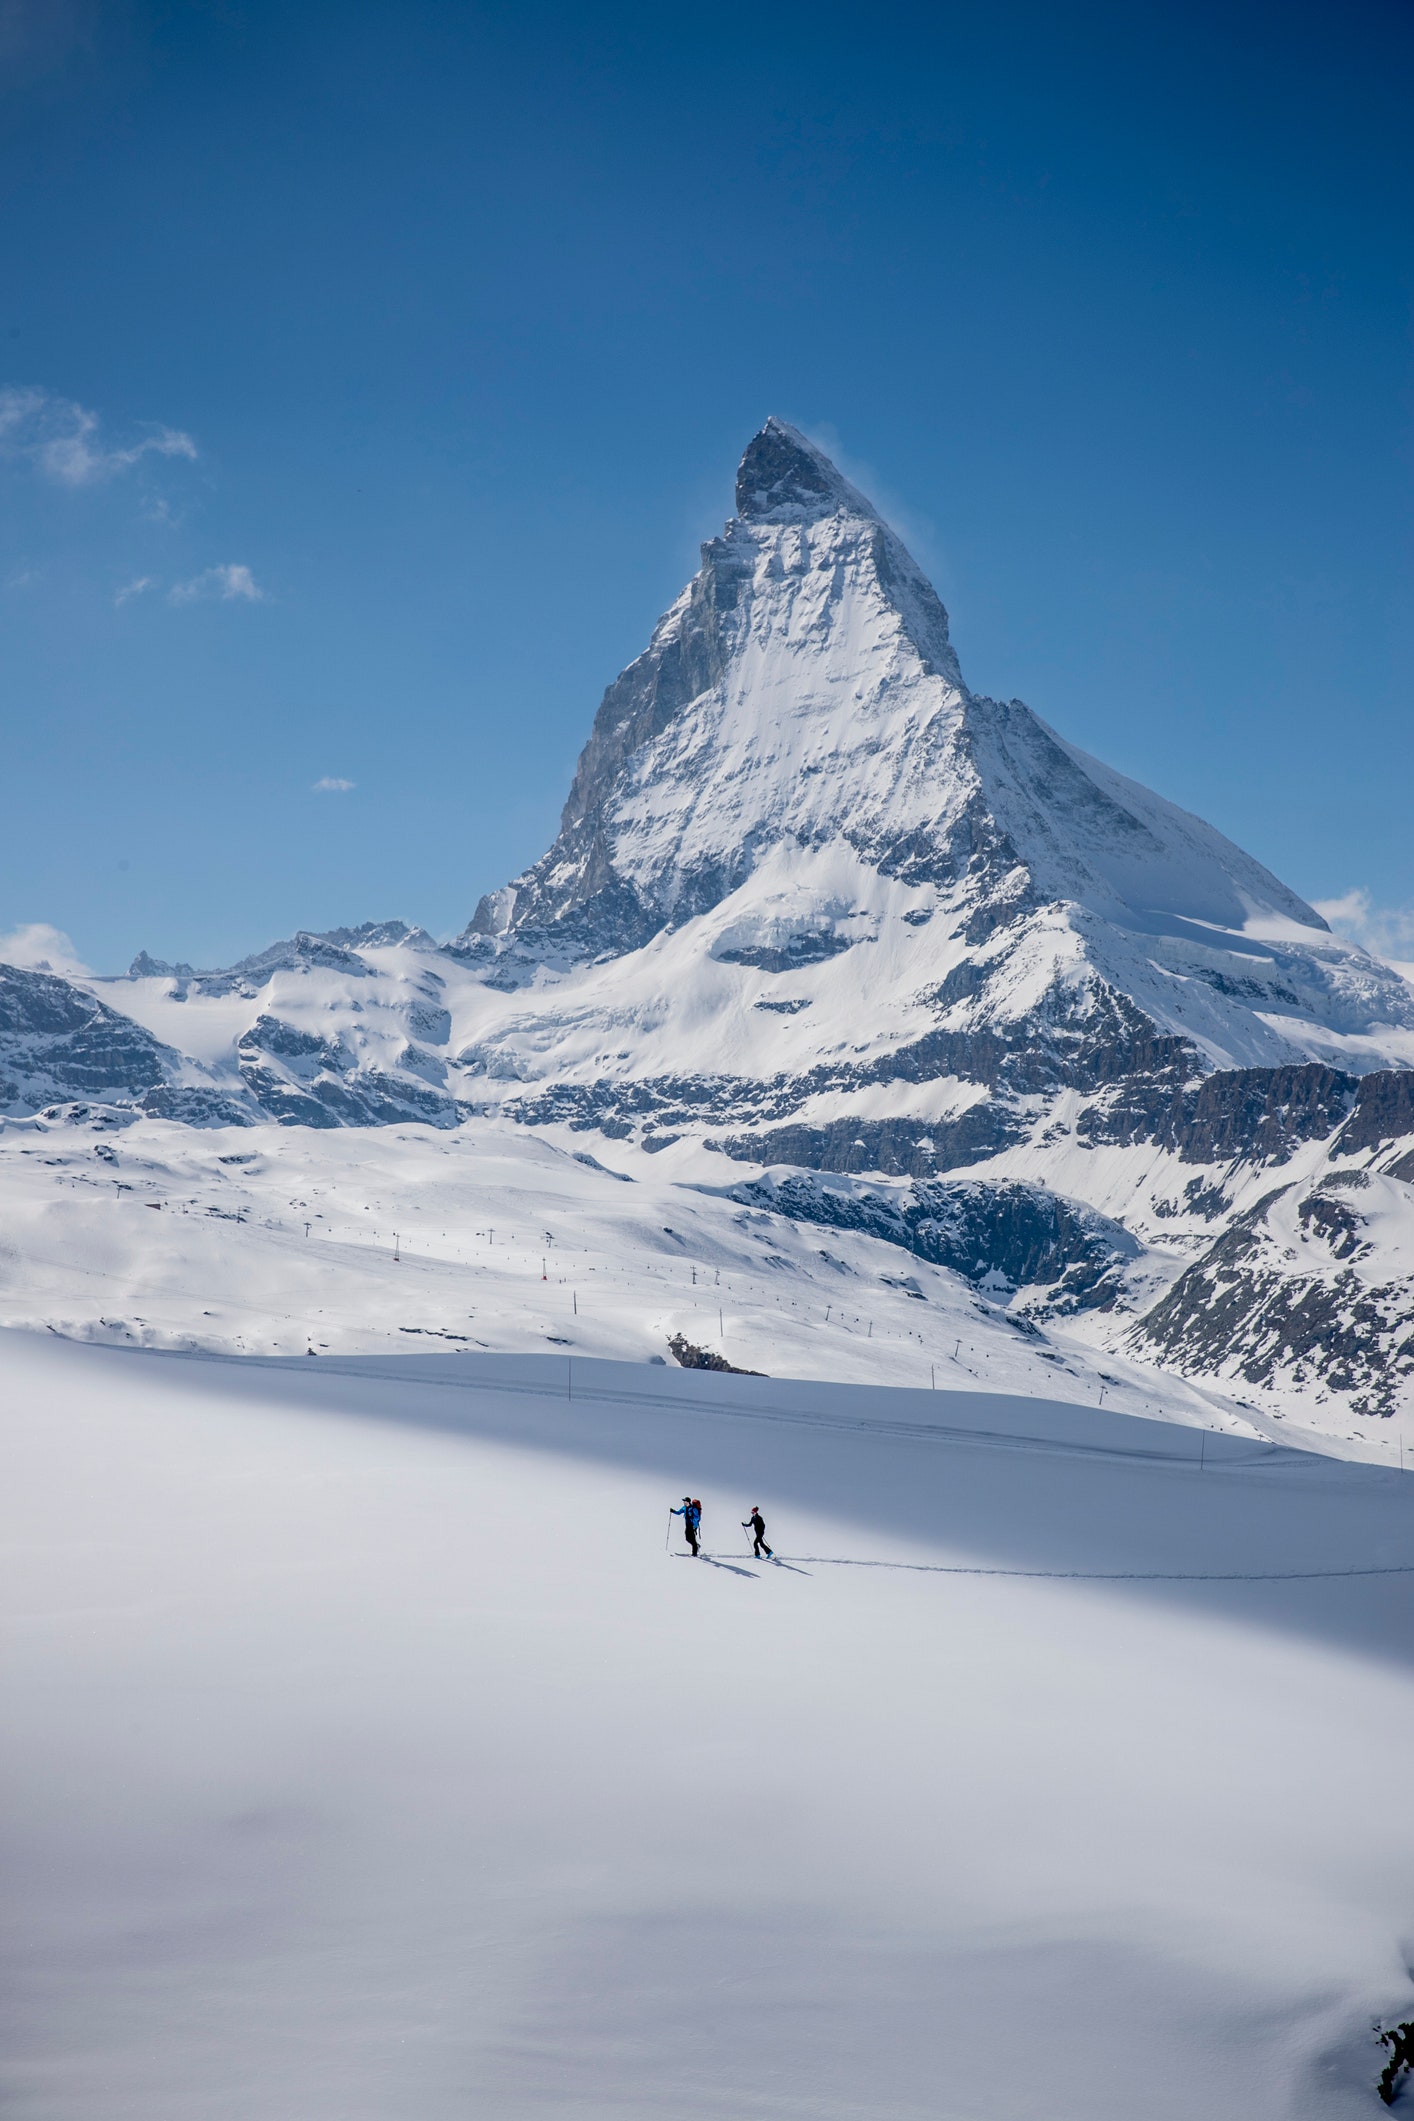 ツェルマットのスキー場で 冬はスキーとスイスのヴァレー州マッターホルンの目の前のパウダースノー